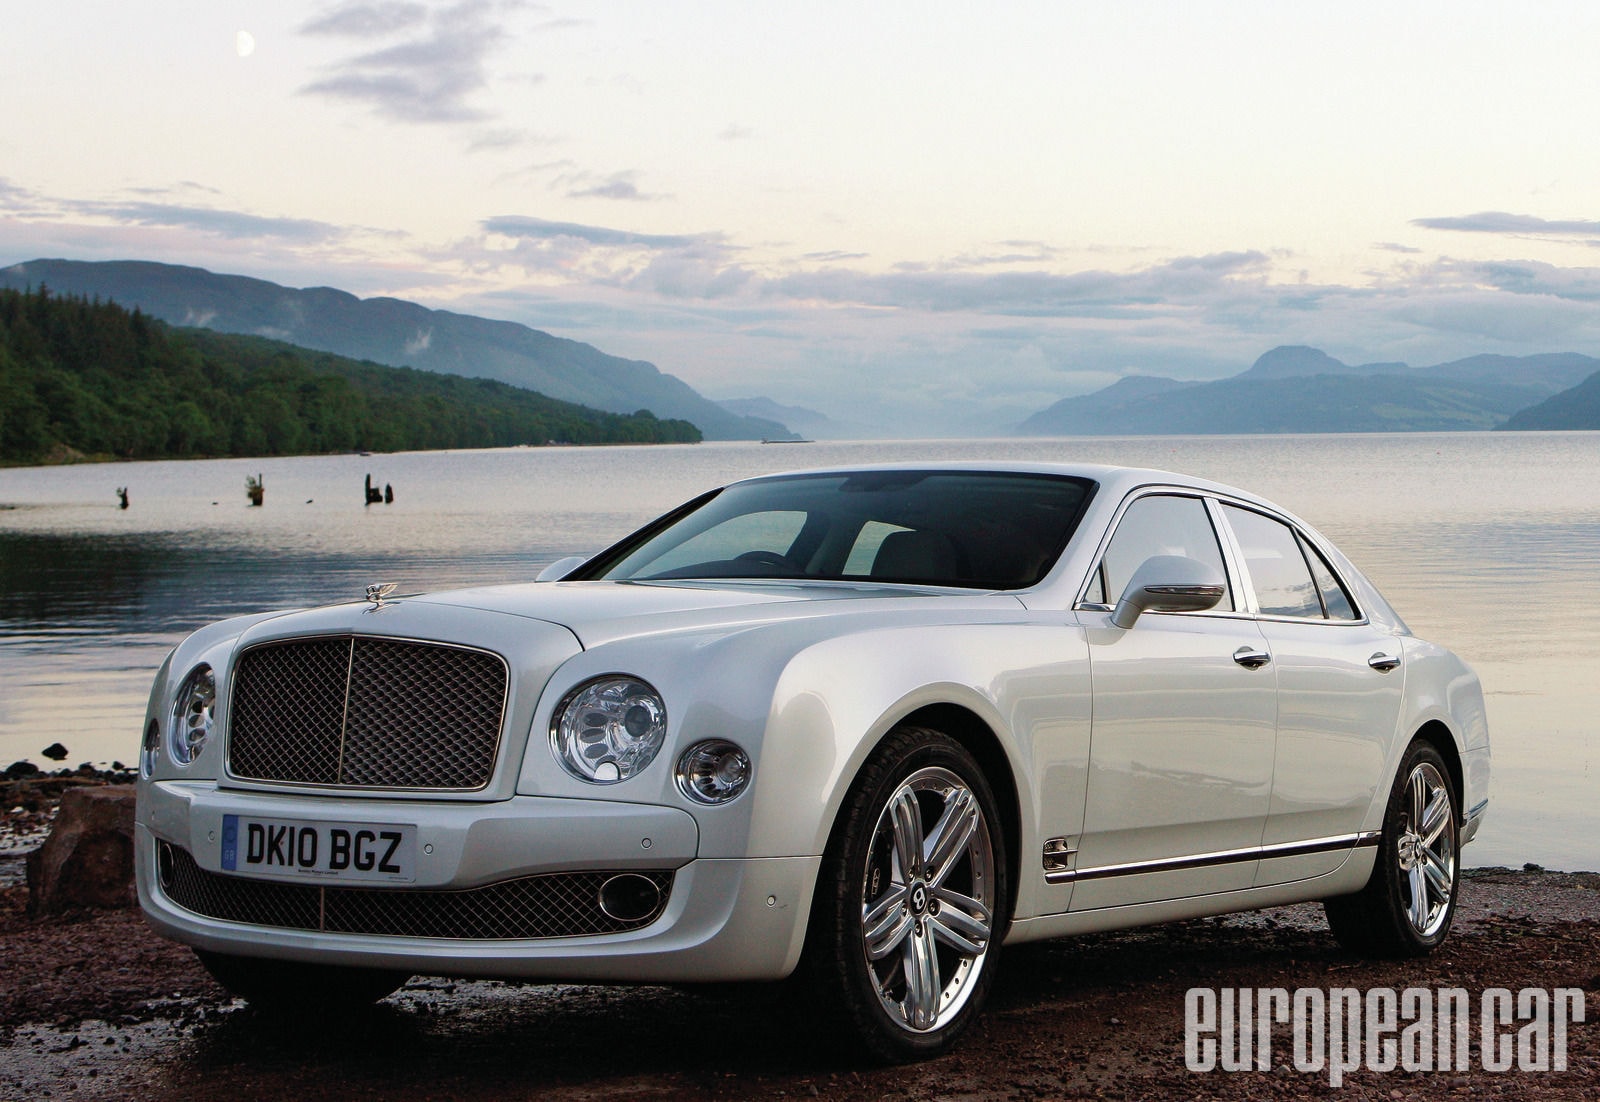 2010 Bentley Mulsanne - First Drive